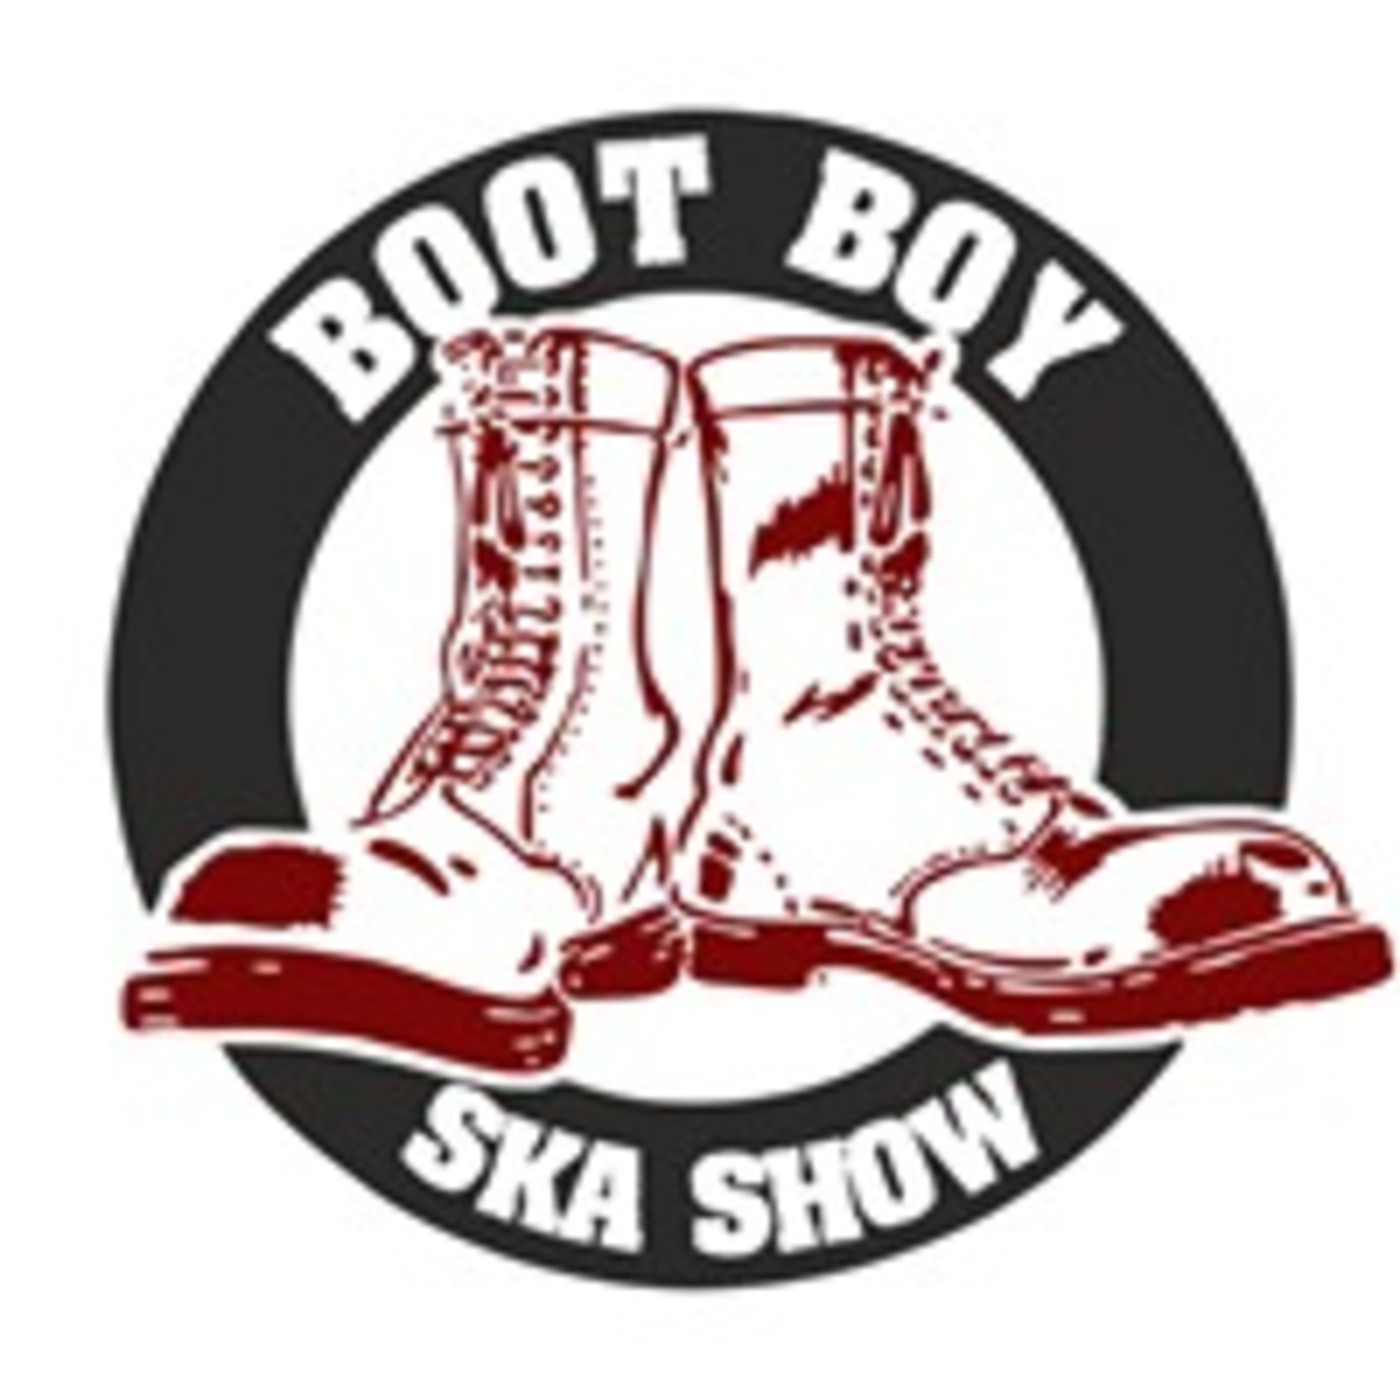 Episode 2775: The Boot Boy Ska Show With Geoff Longbar Dj Moldie & Reggae Rita 18th Nov 2022 On www.bootboyradio.net